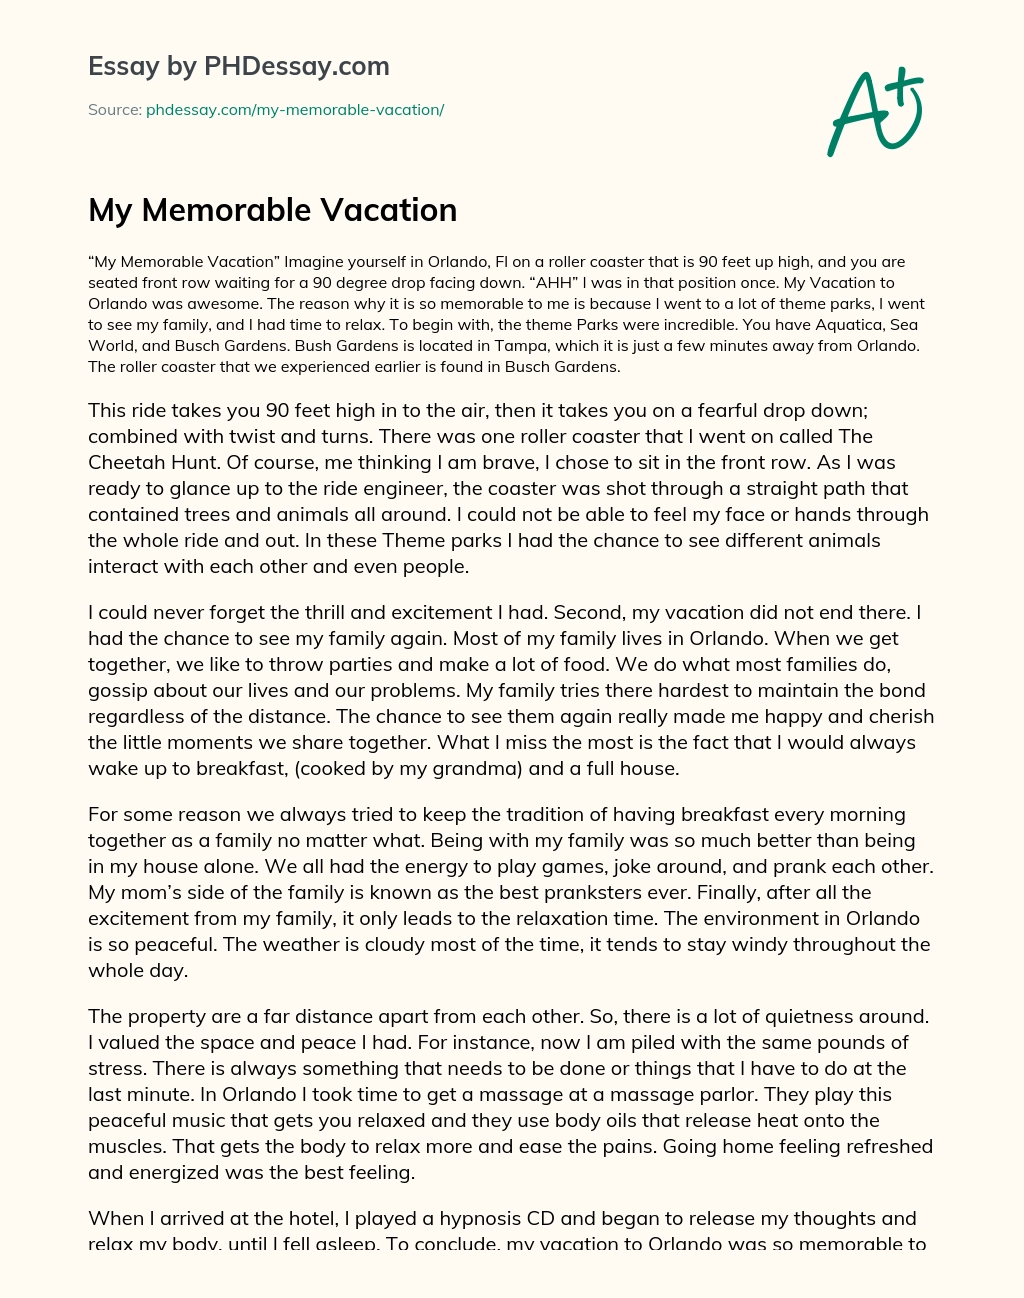 My Memorable Vacation essay